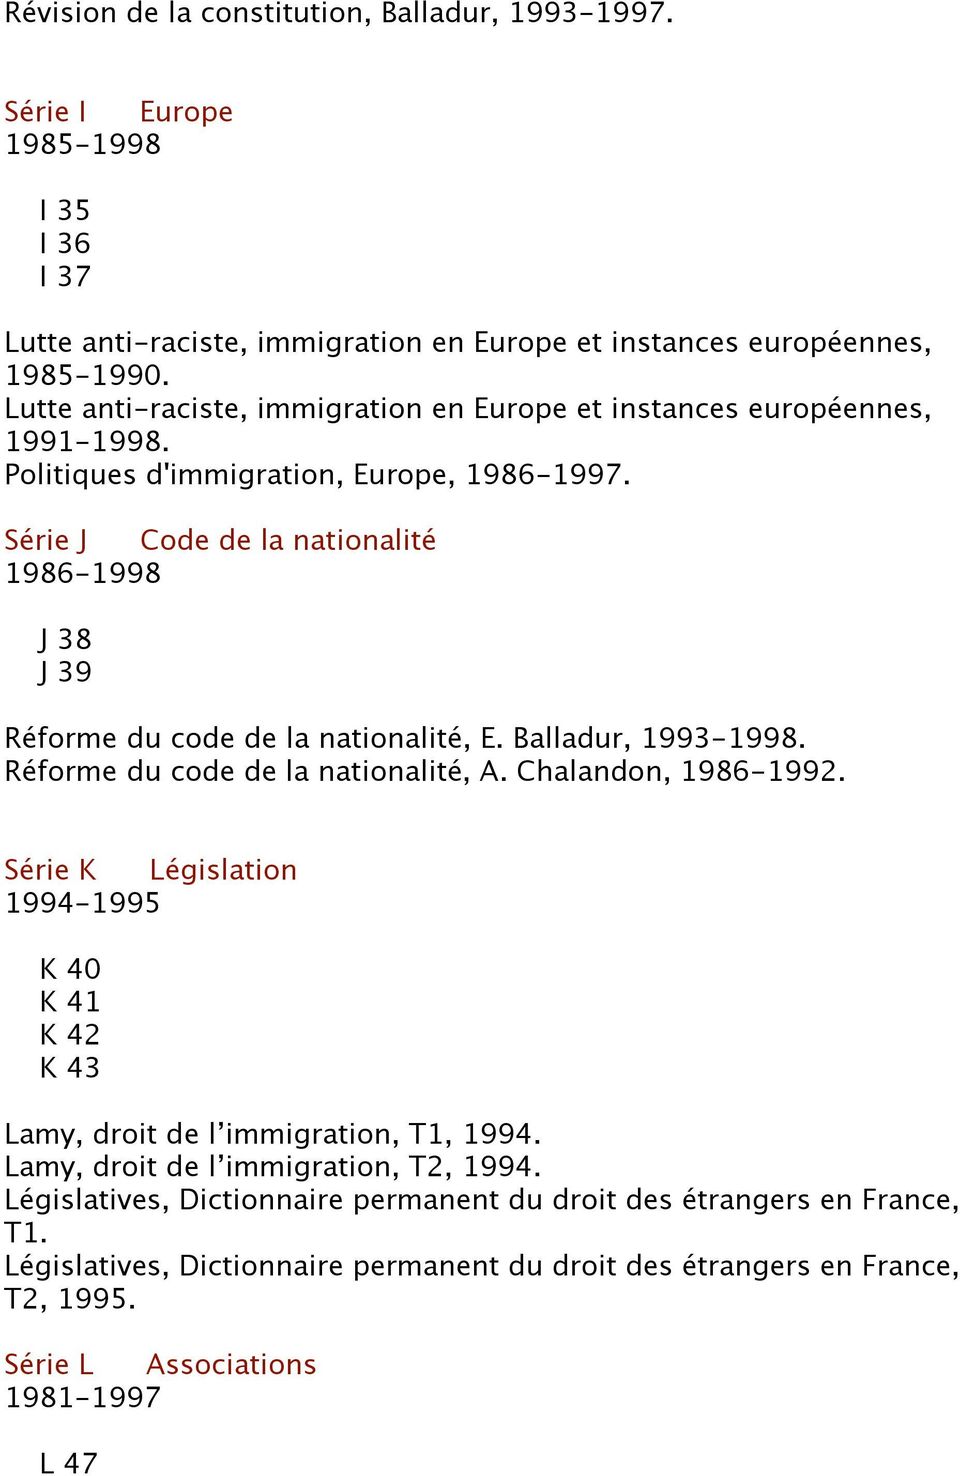 Série J Code de la nationalité 1986-1998 J 38 J 39 Réforme du code de la nationalité, E. Balladur, 1993-1998. Réforme du code de la nationalité, A. Chalandon, 1986-1992.